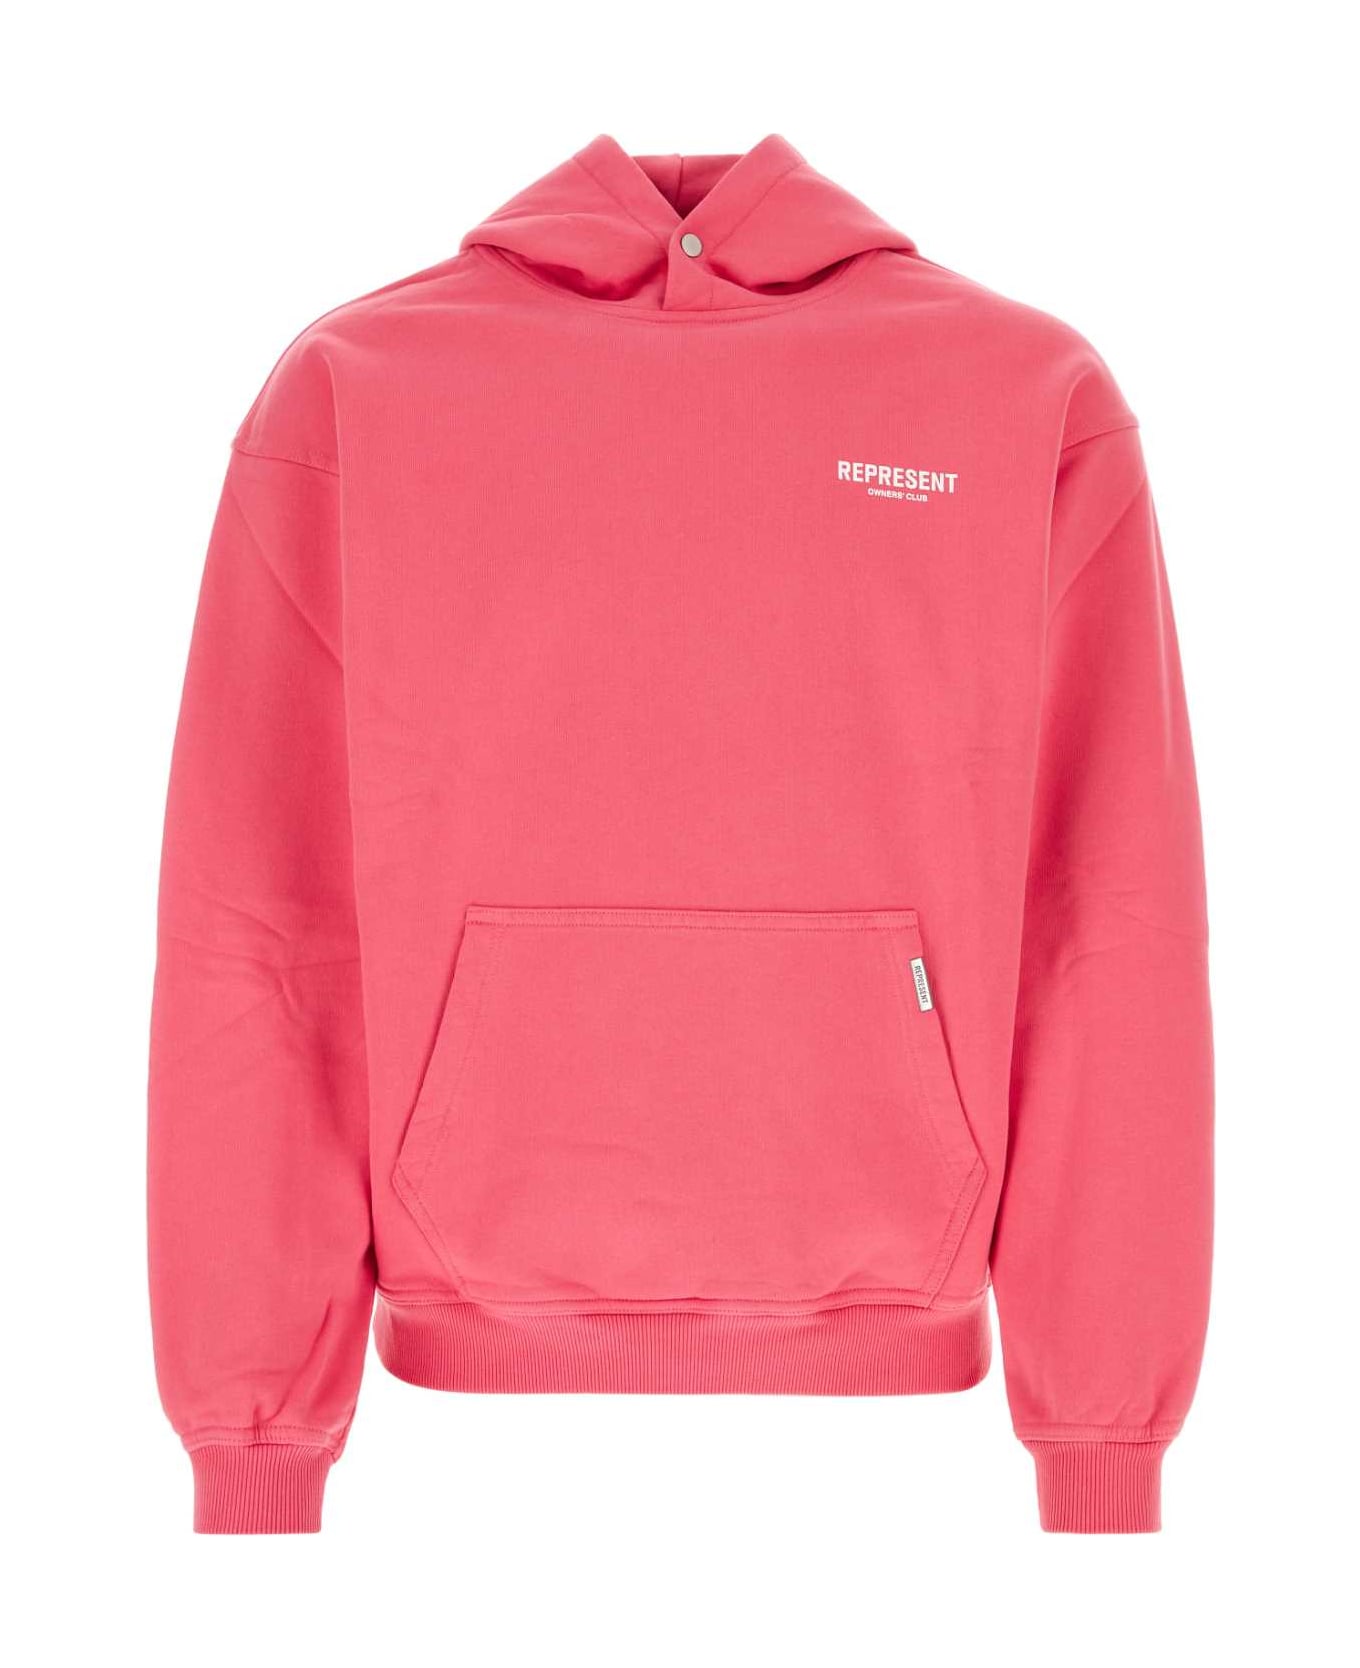 REPRESENT Dark Pink Cotton Sweatshirt - BUBBLEGUMPINK